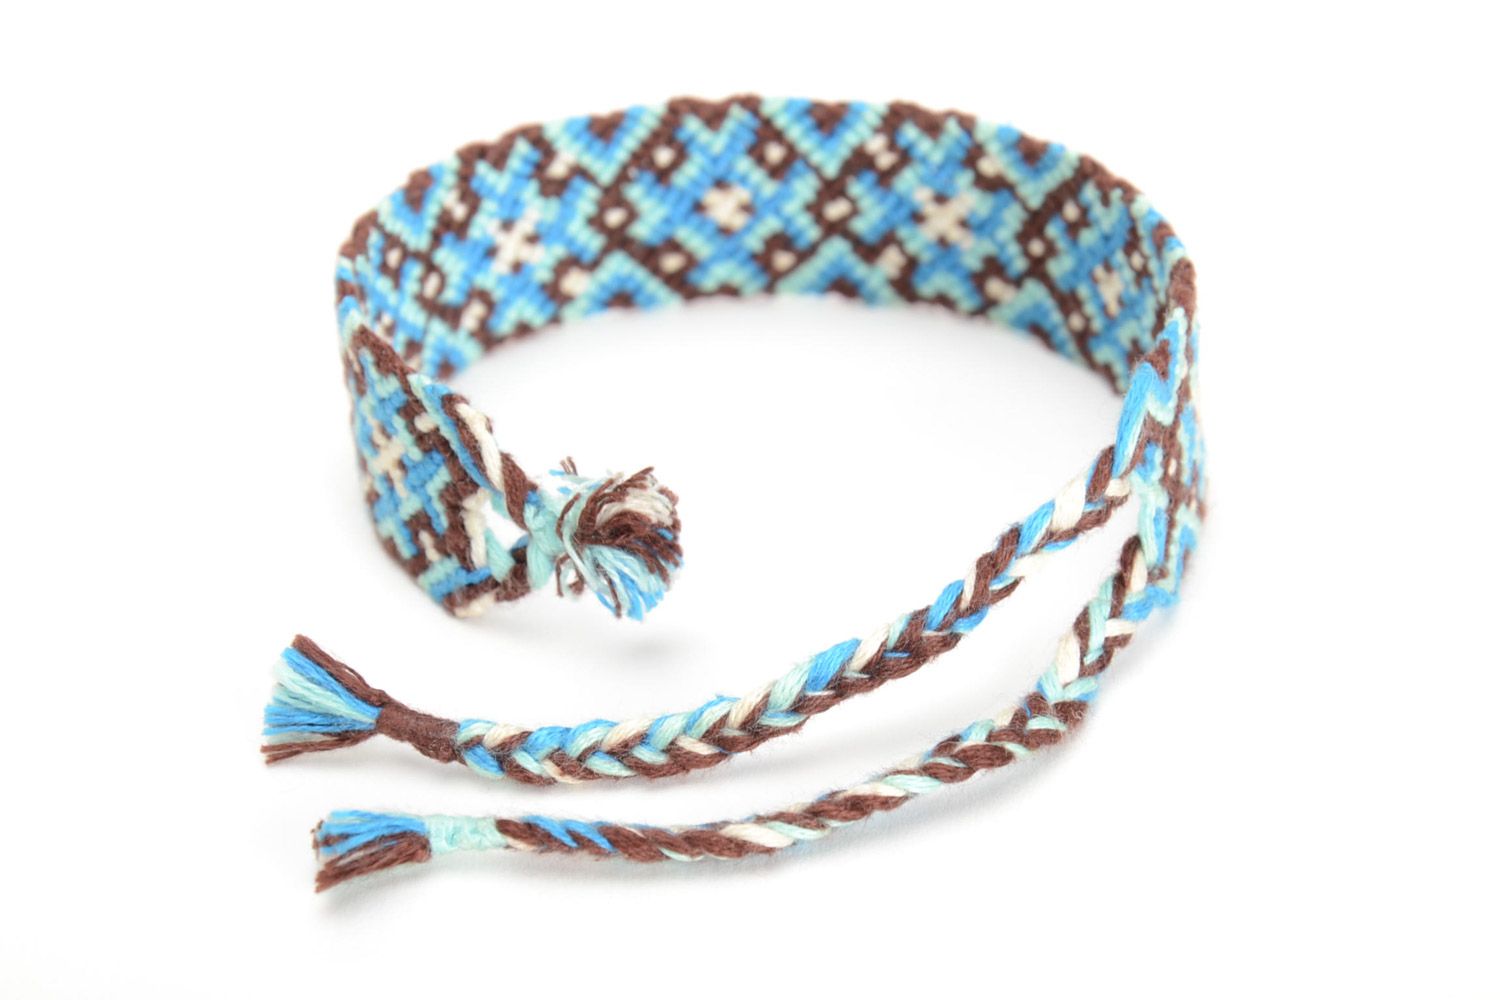 Текстильный браслет из ниток наручный голубой с коричневым орнаментом хенд мэйд фото 3